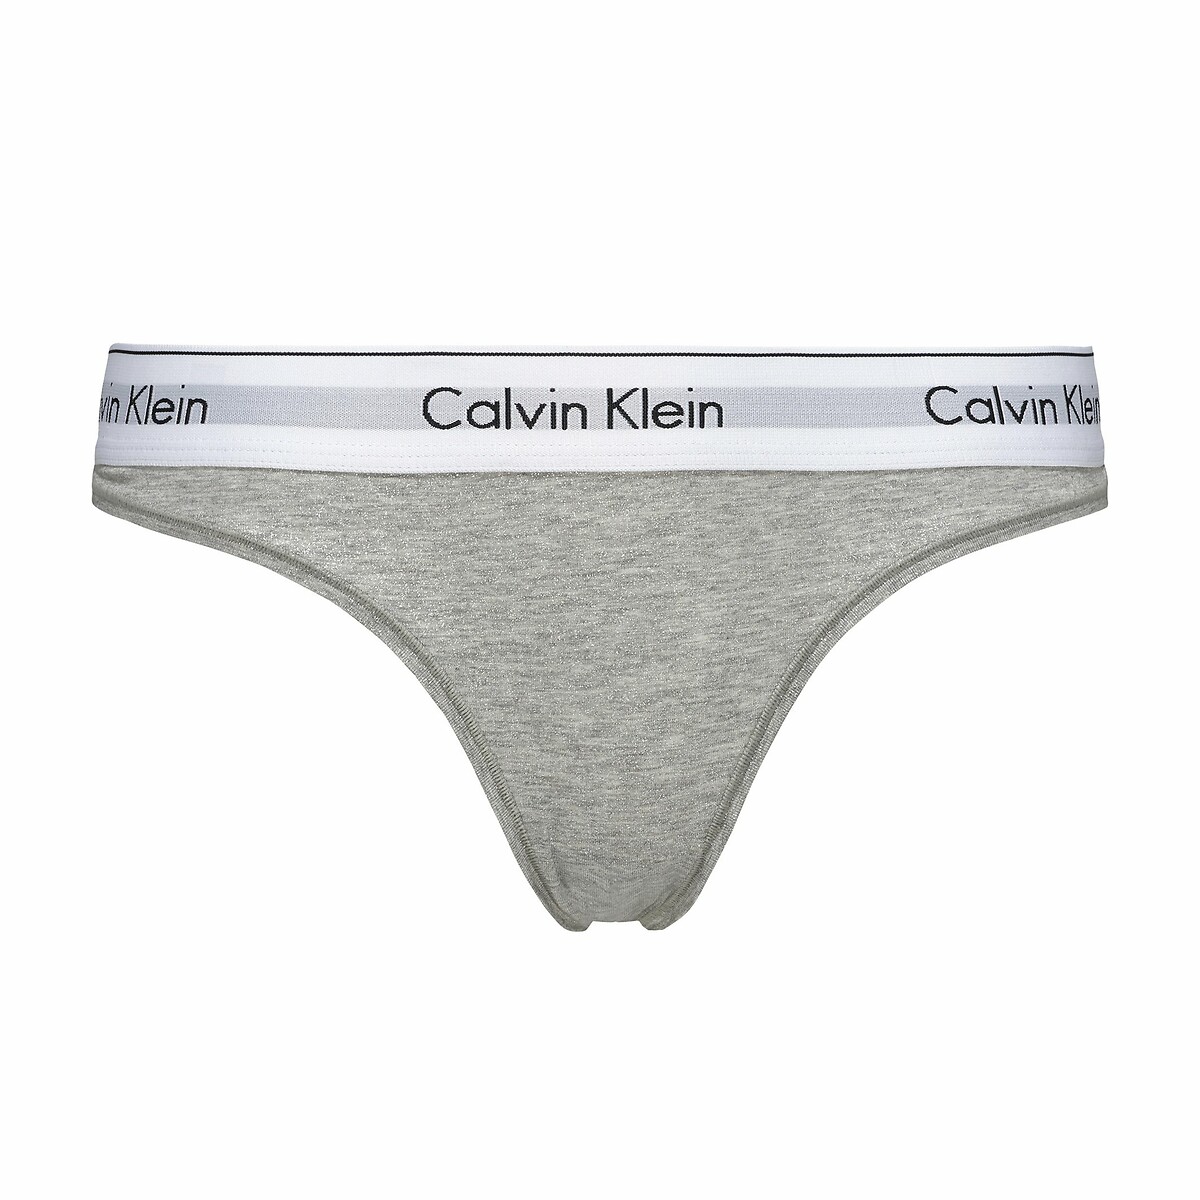 Tangas Calvin Klein, Nova Coleção